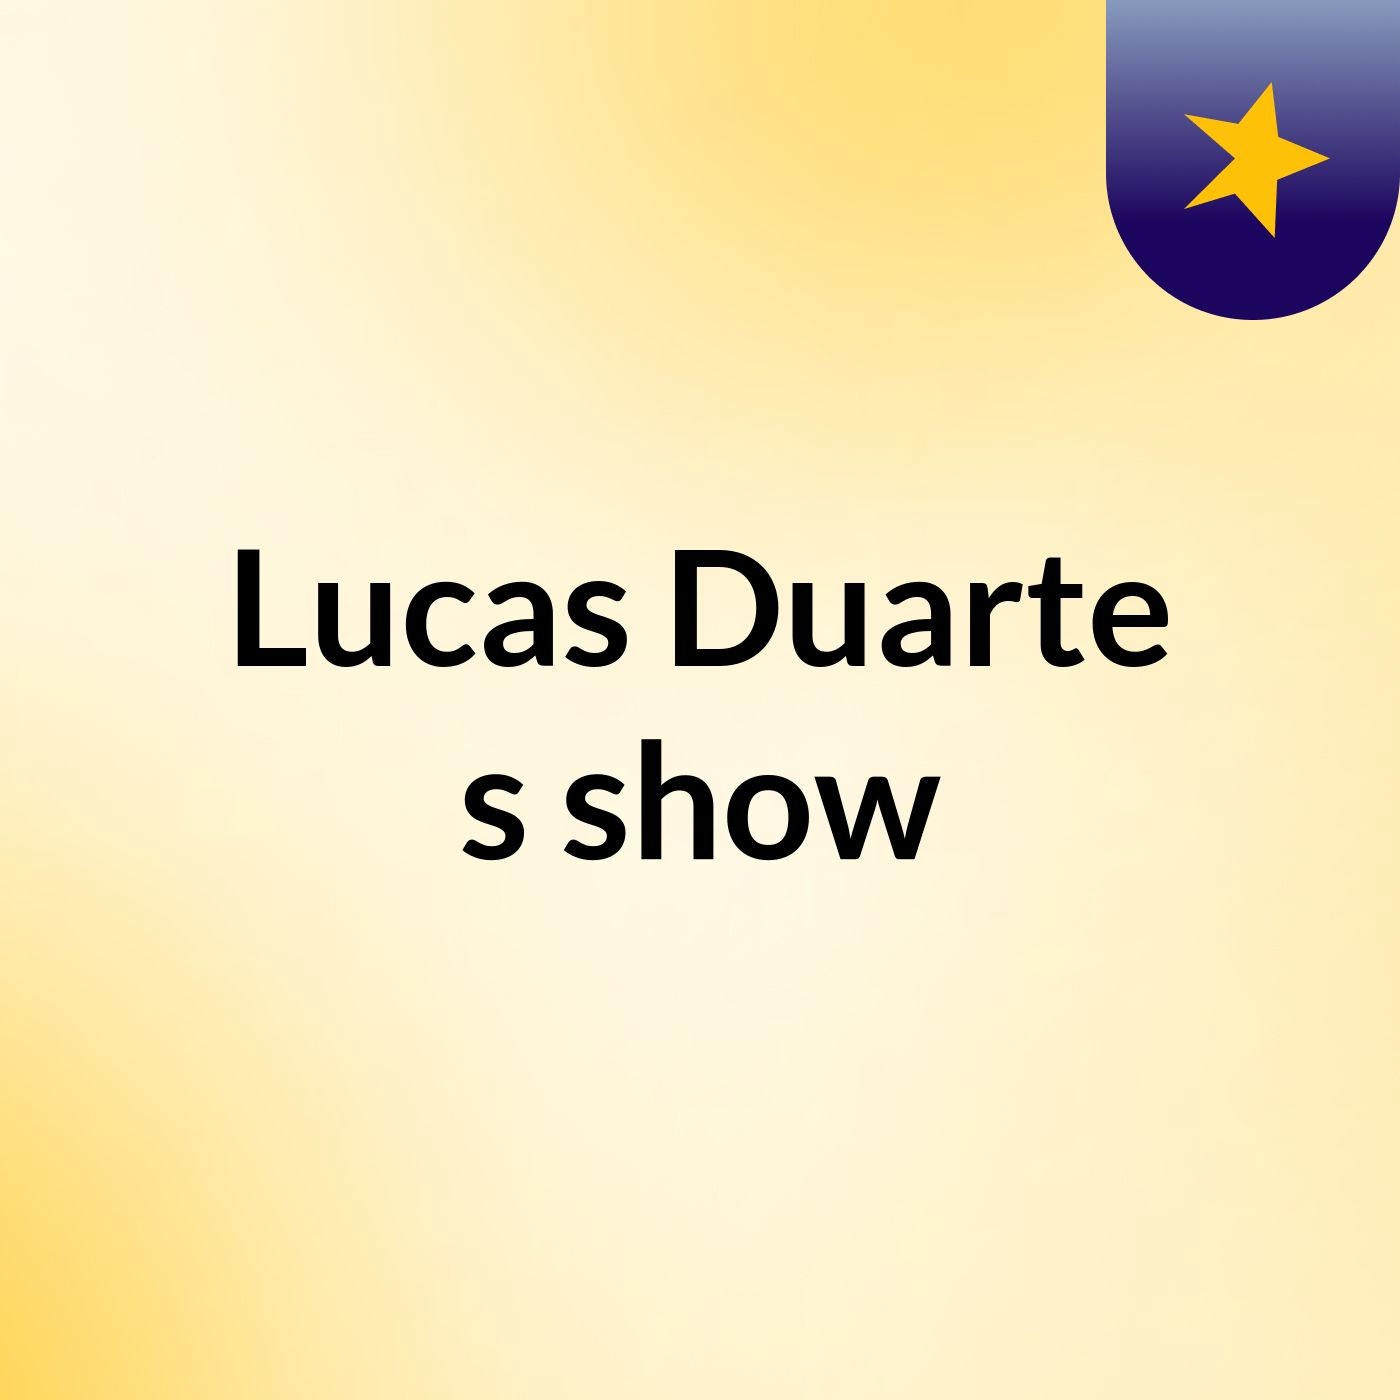 Lucas Duarte's show